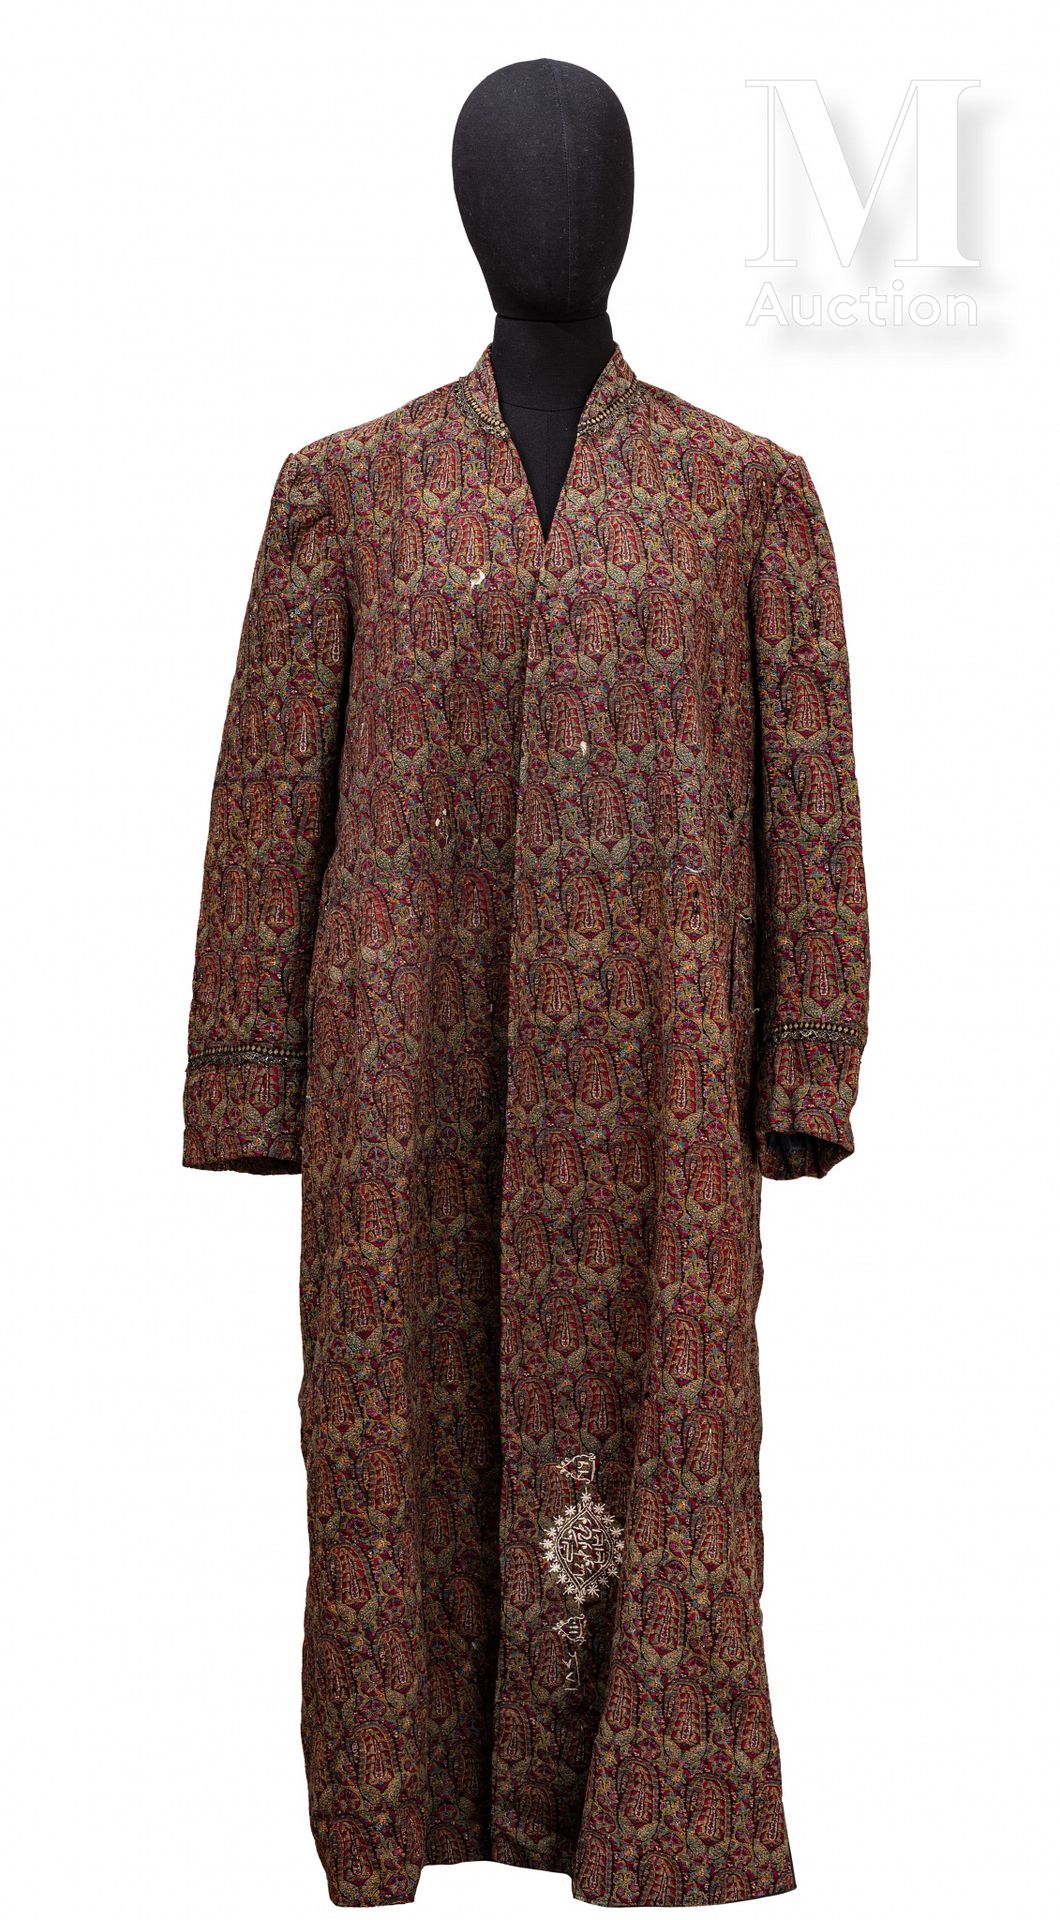 Manteau Qajar Irán, siglo XIX

Prenda tejida en lana y seda con un patrón de tap&hellip;